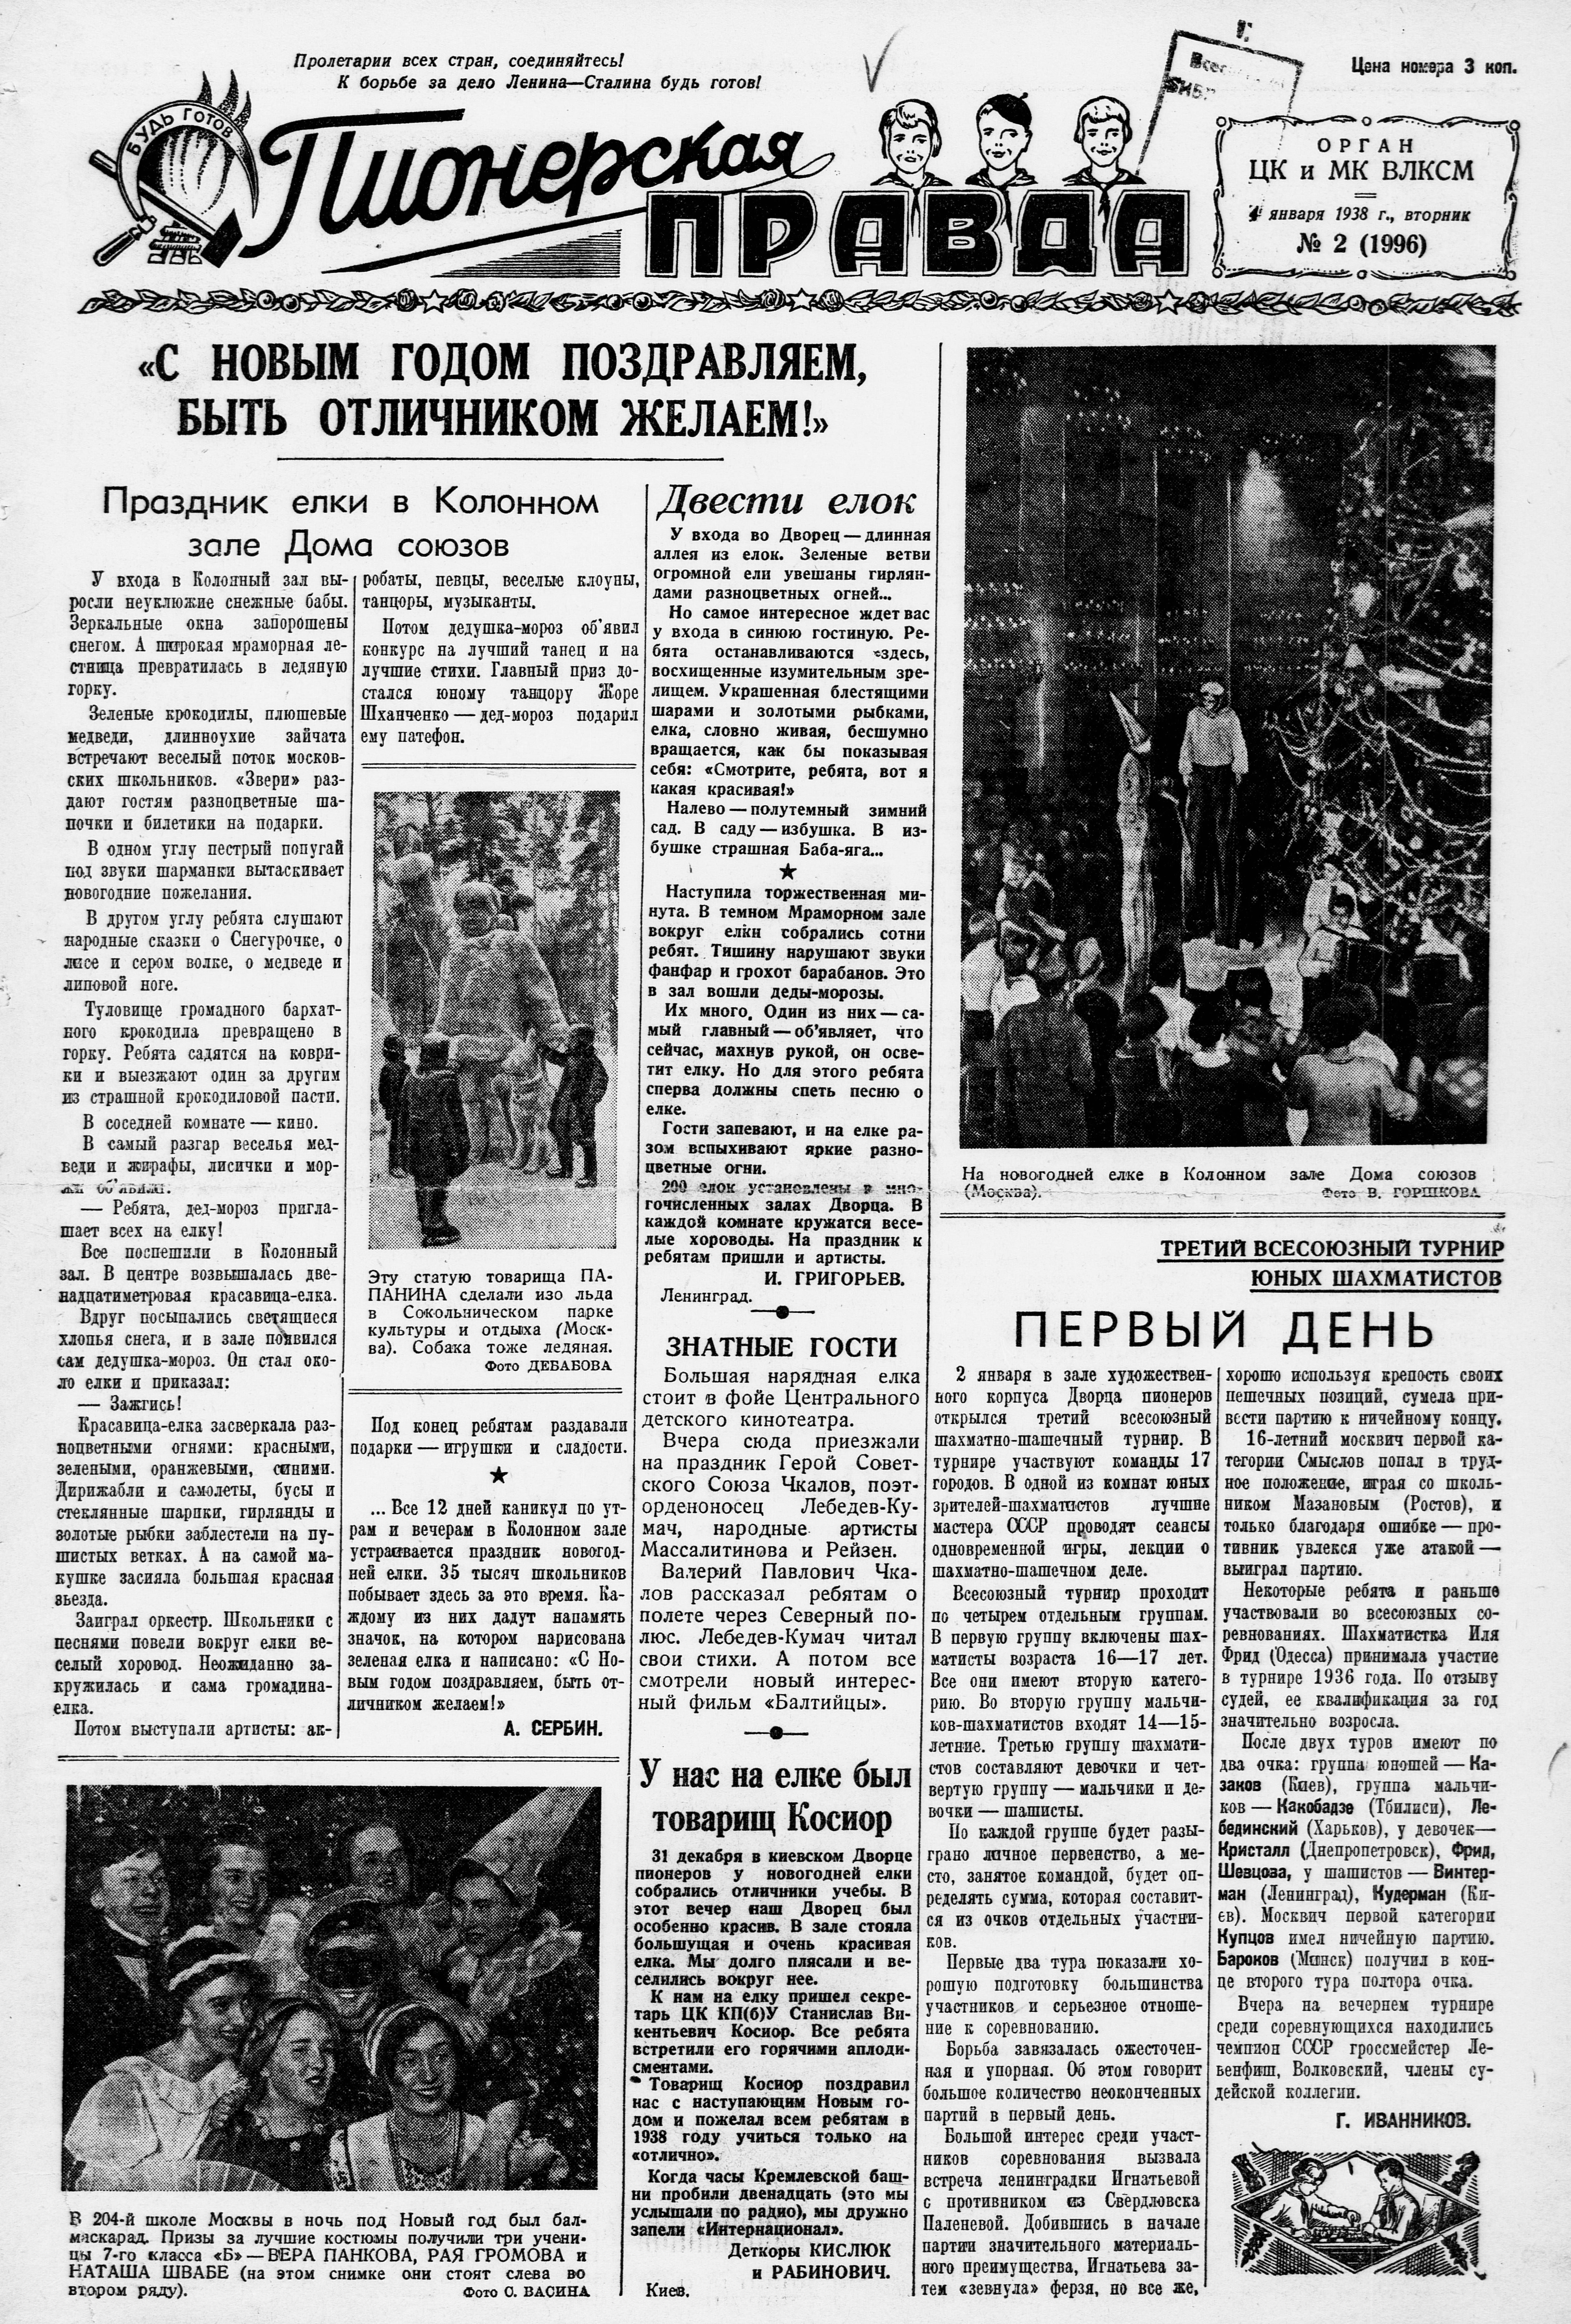 Пионерская правда. 1938. № 002 (1996): Орган ЦК и МК ВЛКСМ - 1938